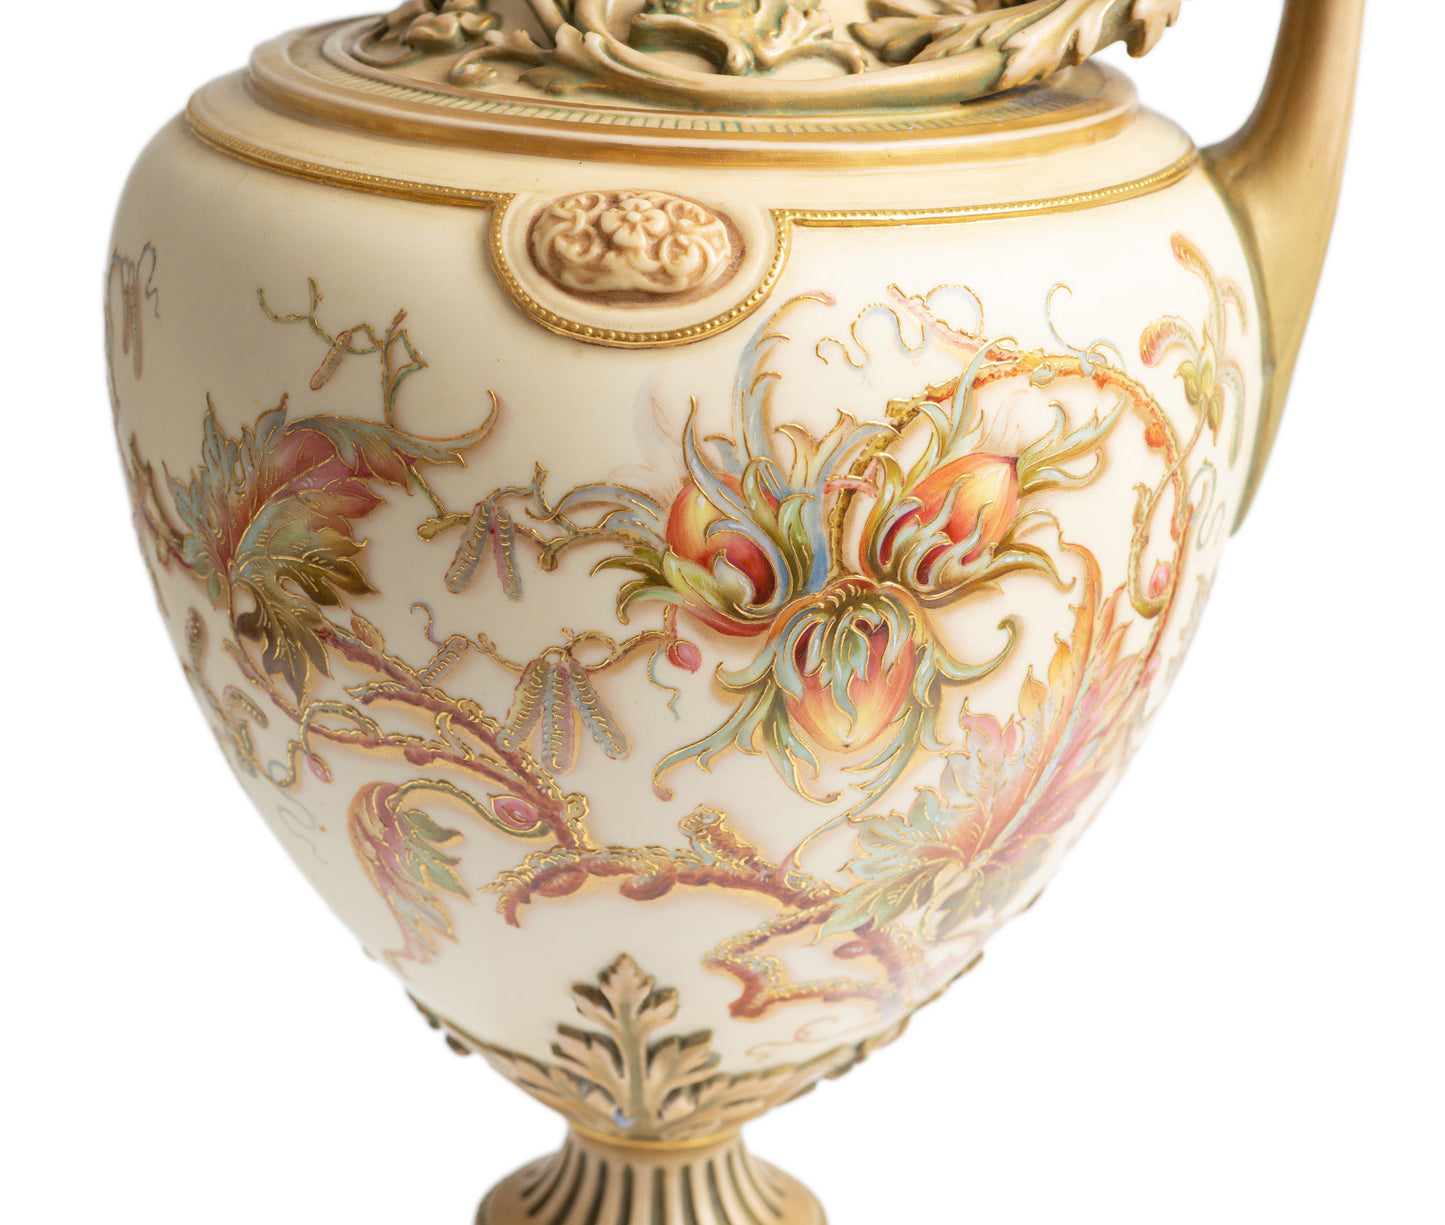 Exceptional Royal Worcester Ivory Glaze & Antique Gold Ewer Model 1309 (Code 2687)